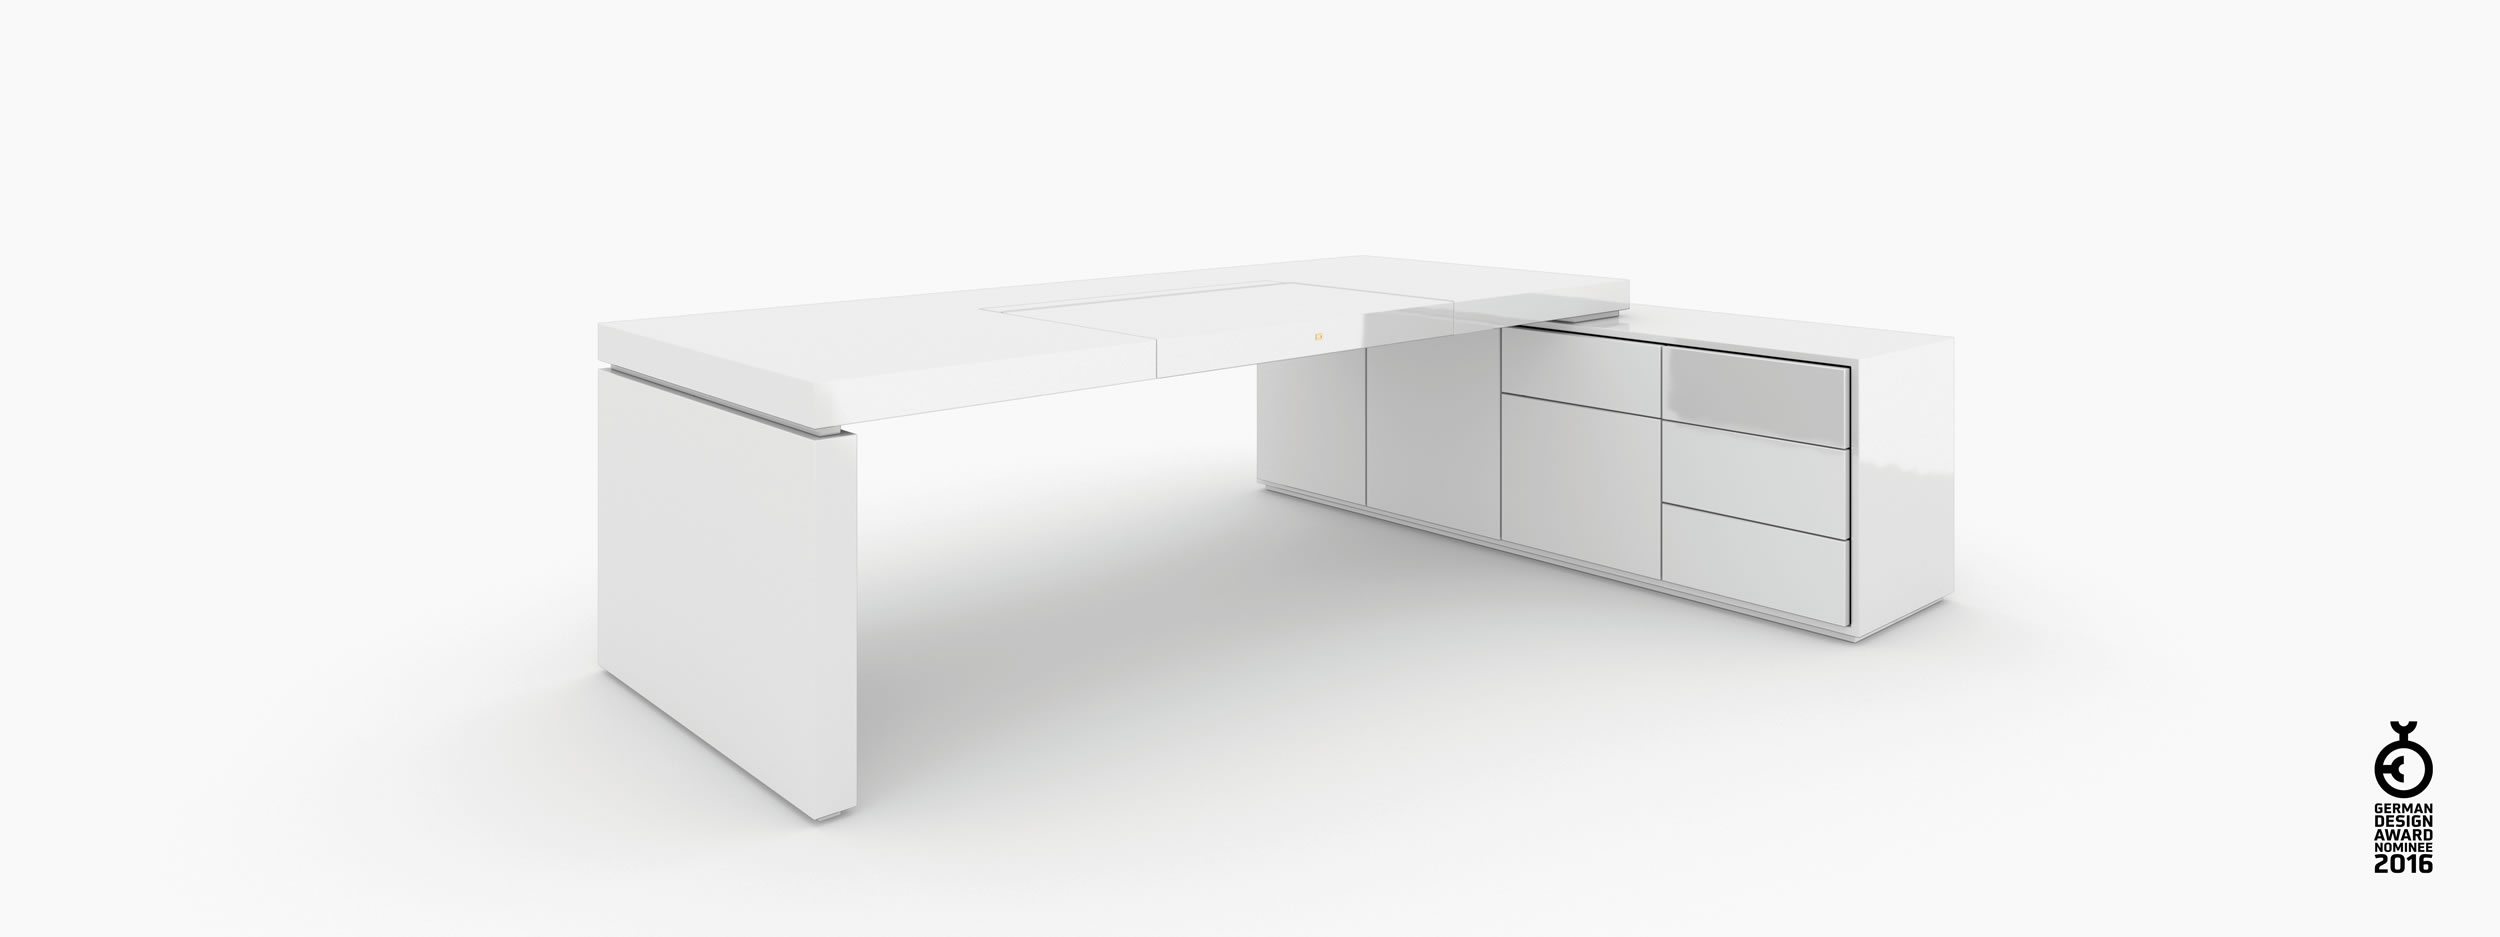 Schreibtisch scheiben und quader weiss interiorstyle Chefzimmer object design Schreibtische FS 93 FELIX SCHWAKE RECHTECK